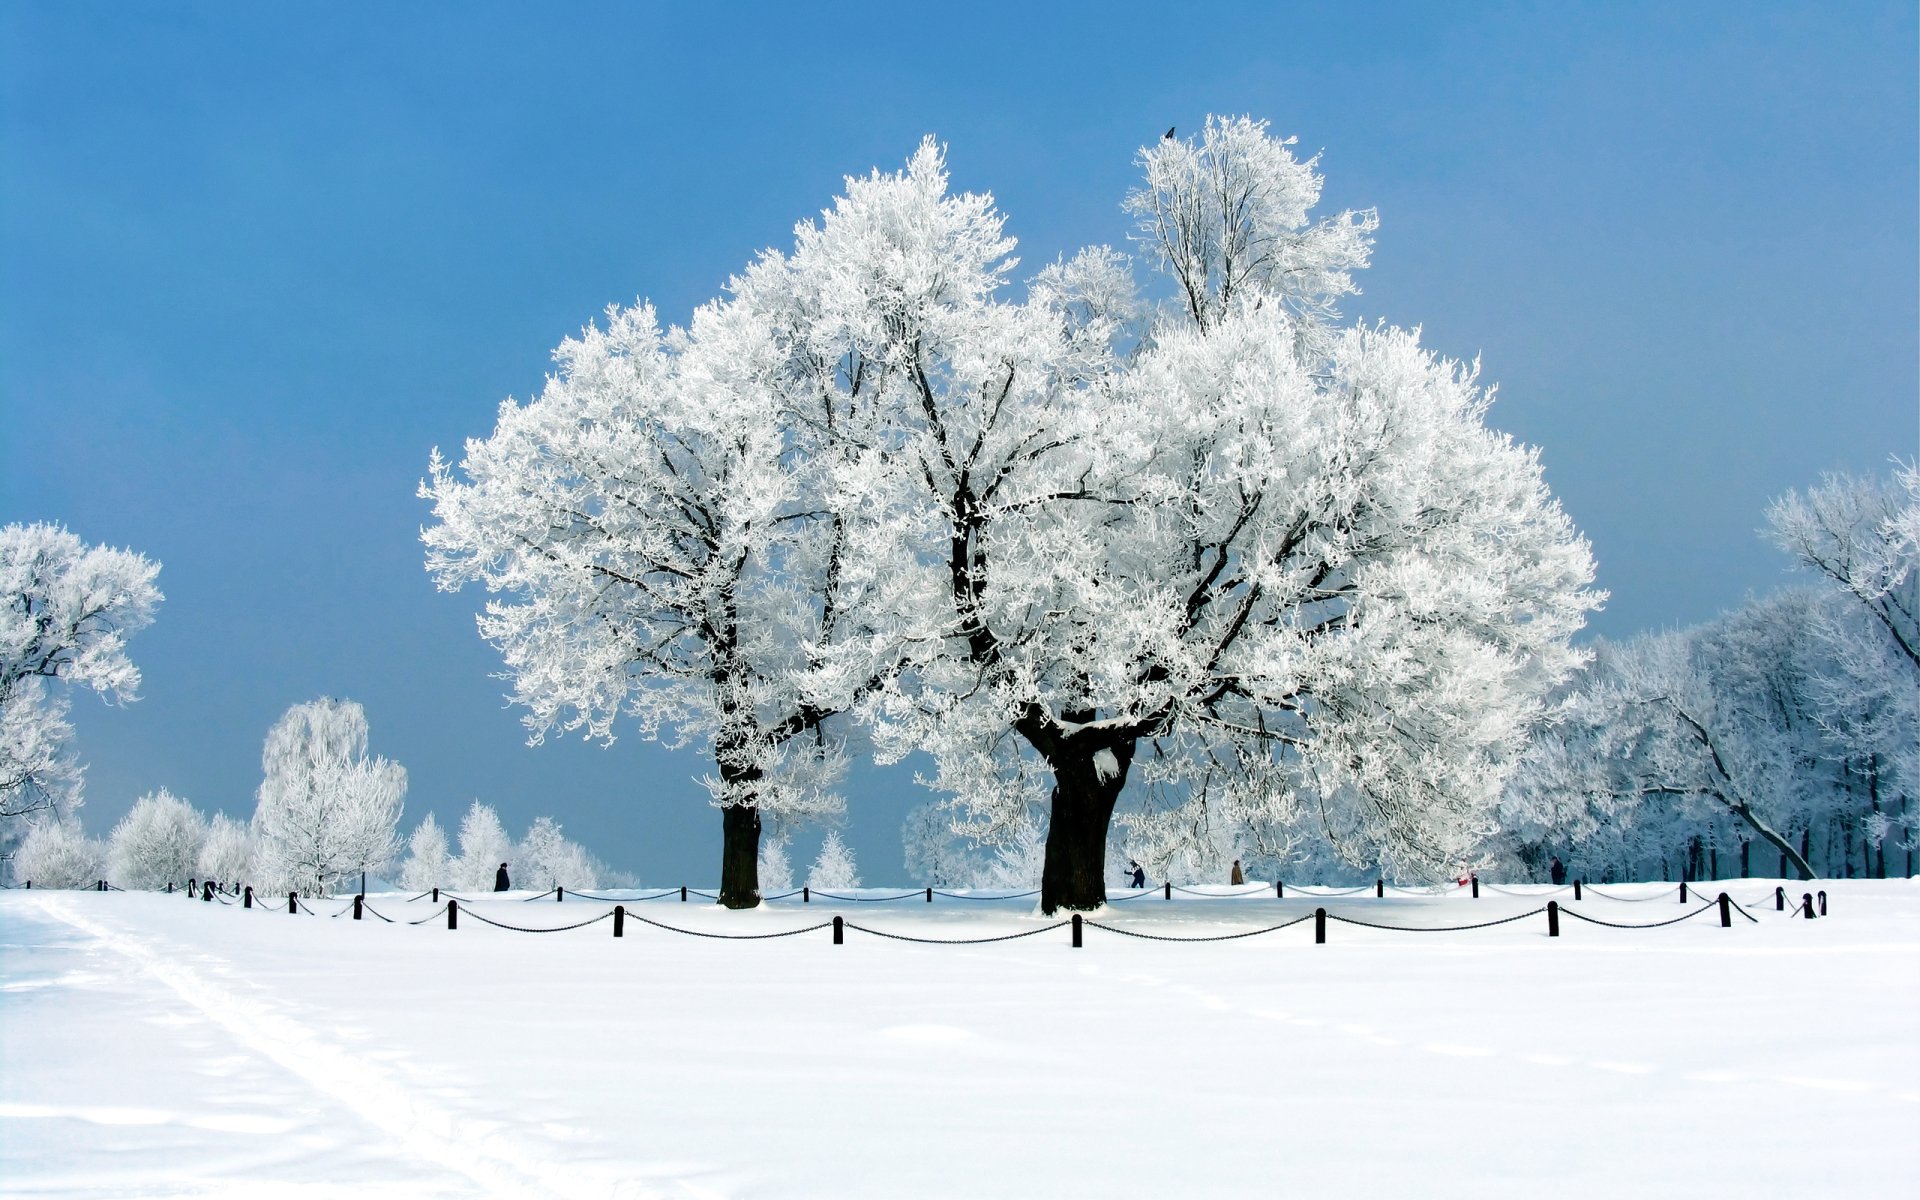 Imágenes De Fondo De Invierno / fotos de invierno para fondo de